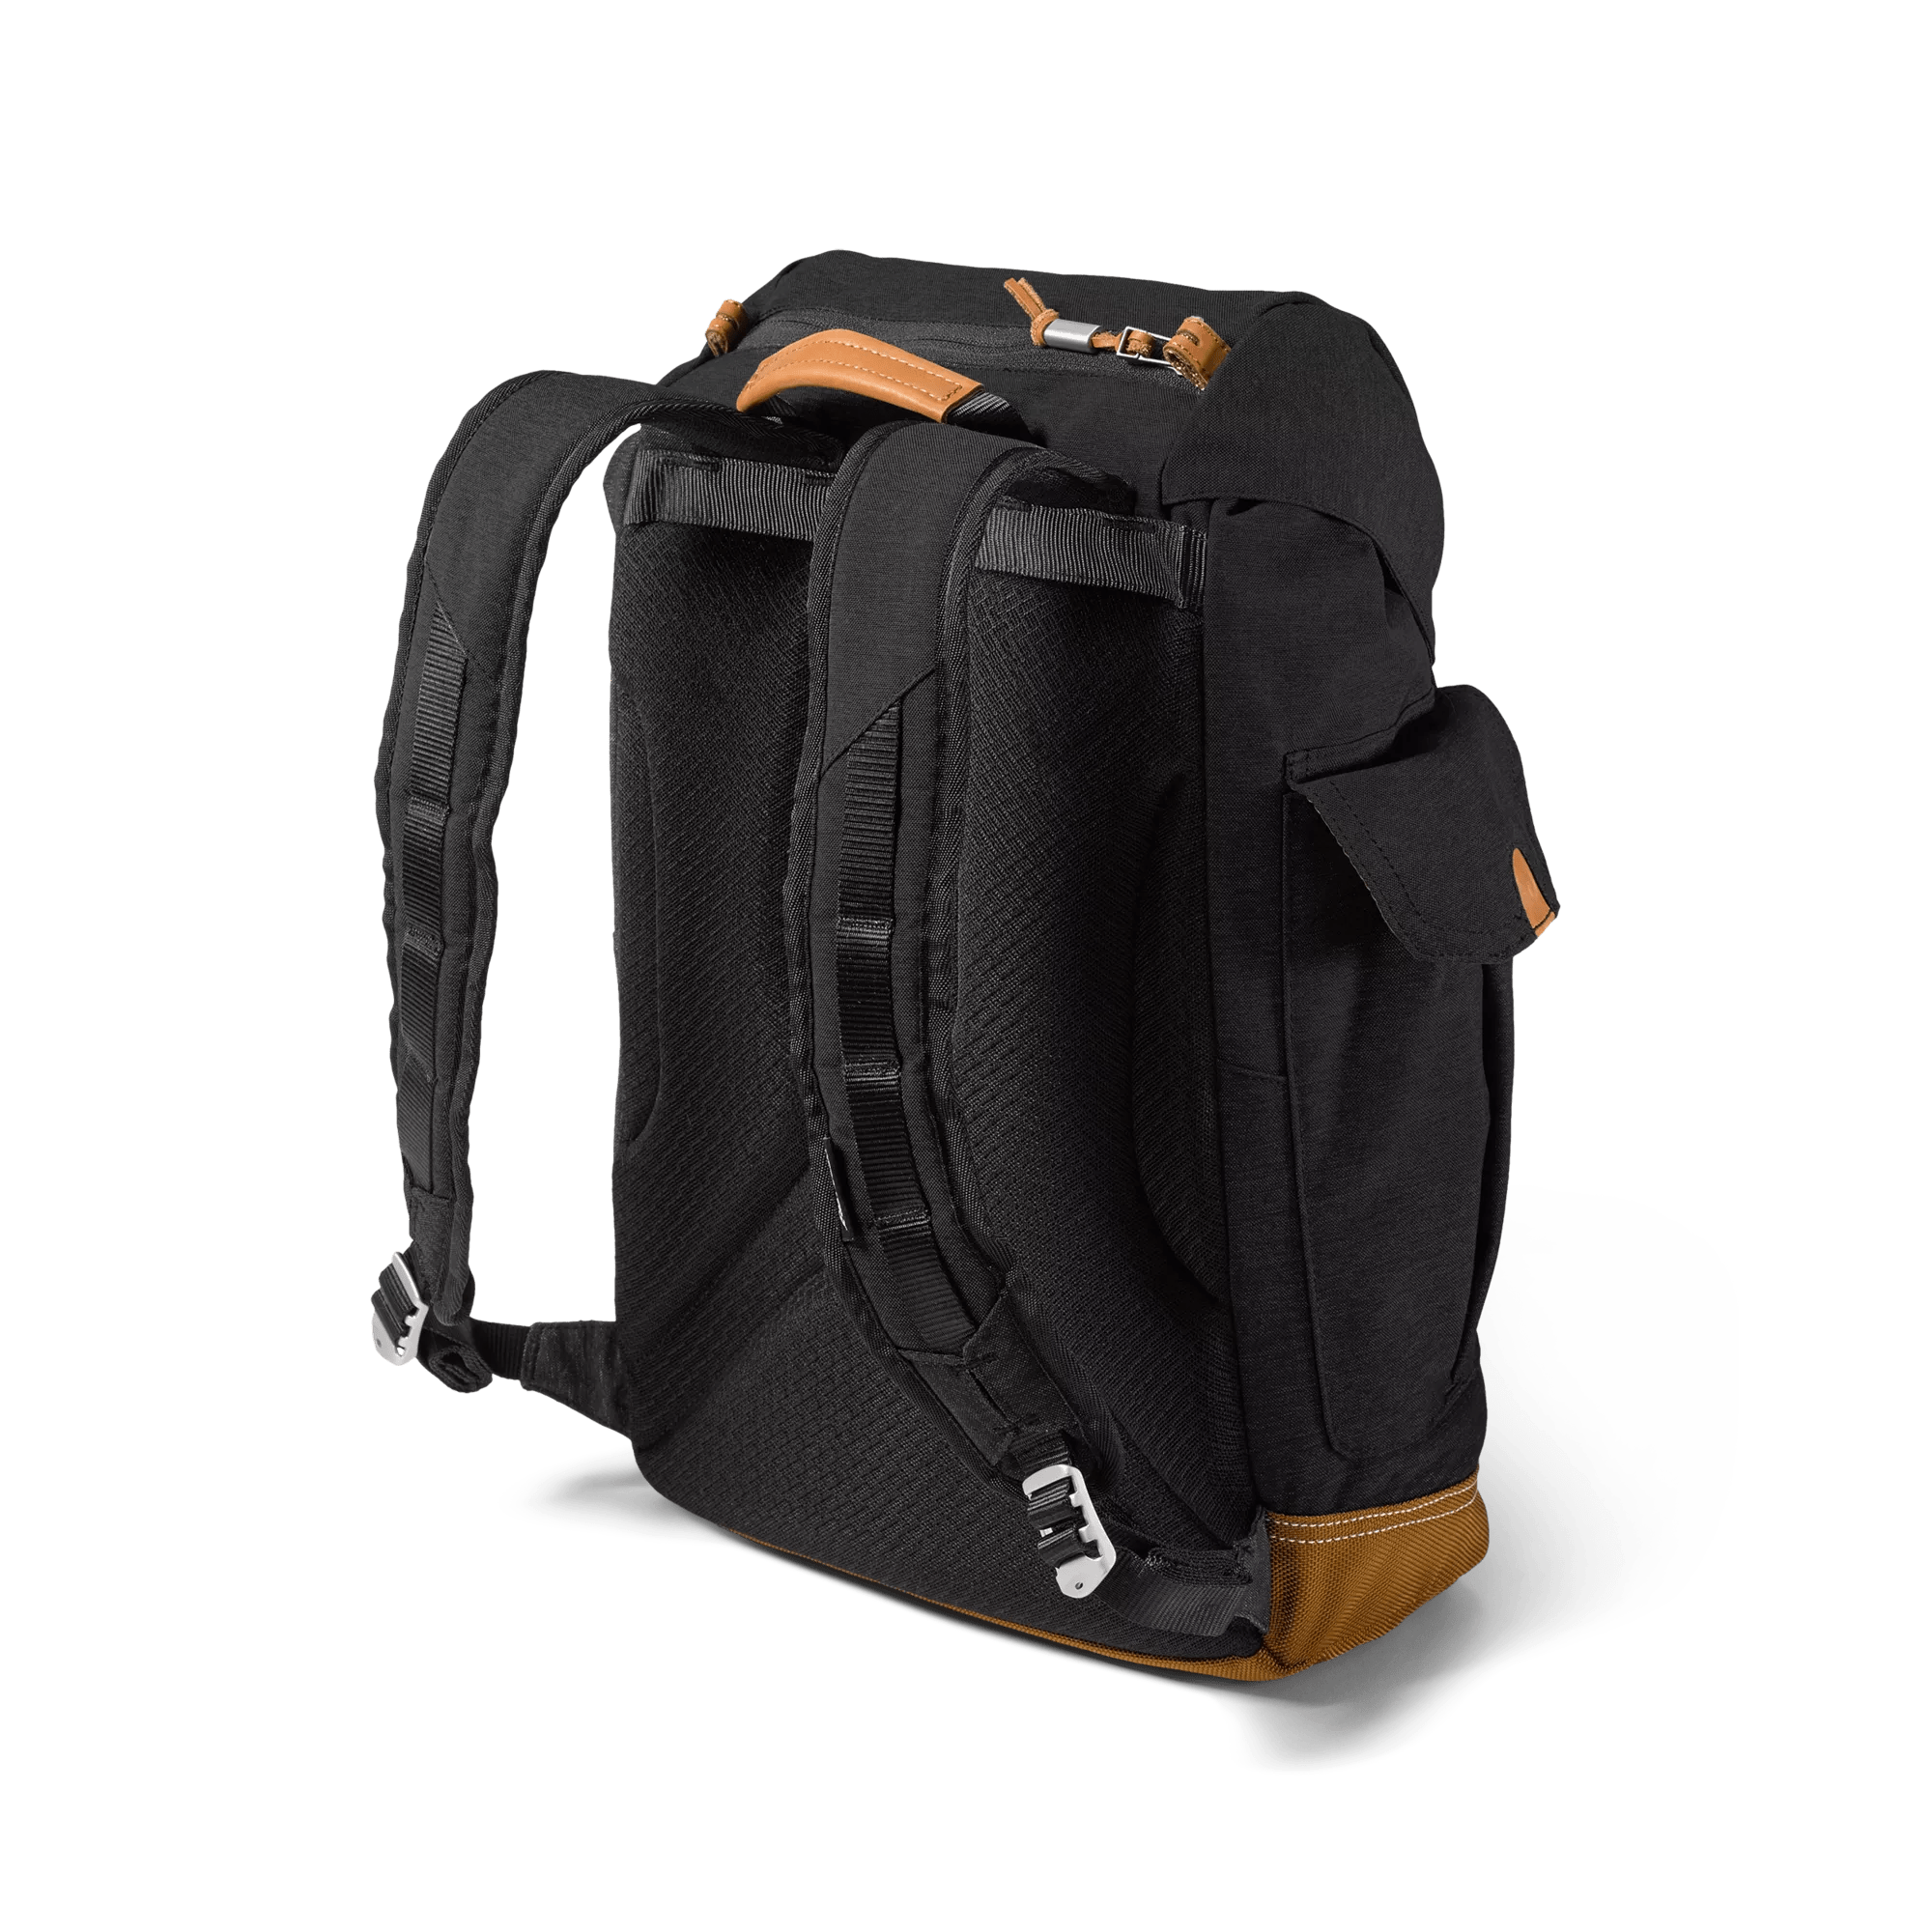 Bygone Backpack - 25L